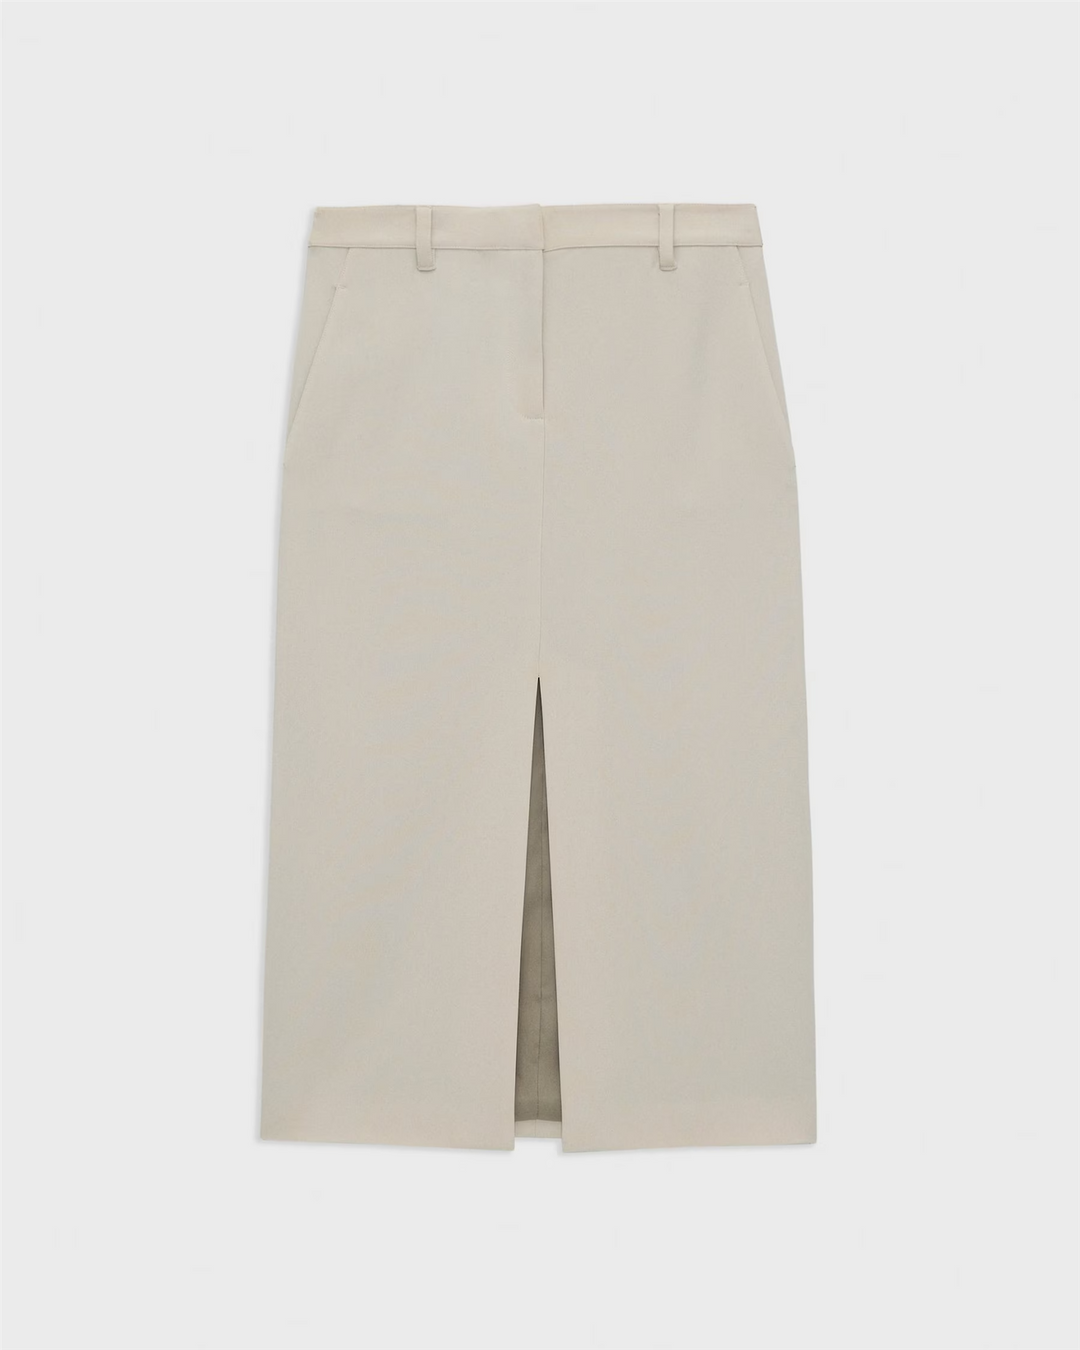 Midi Trouser Skirt